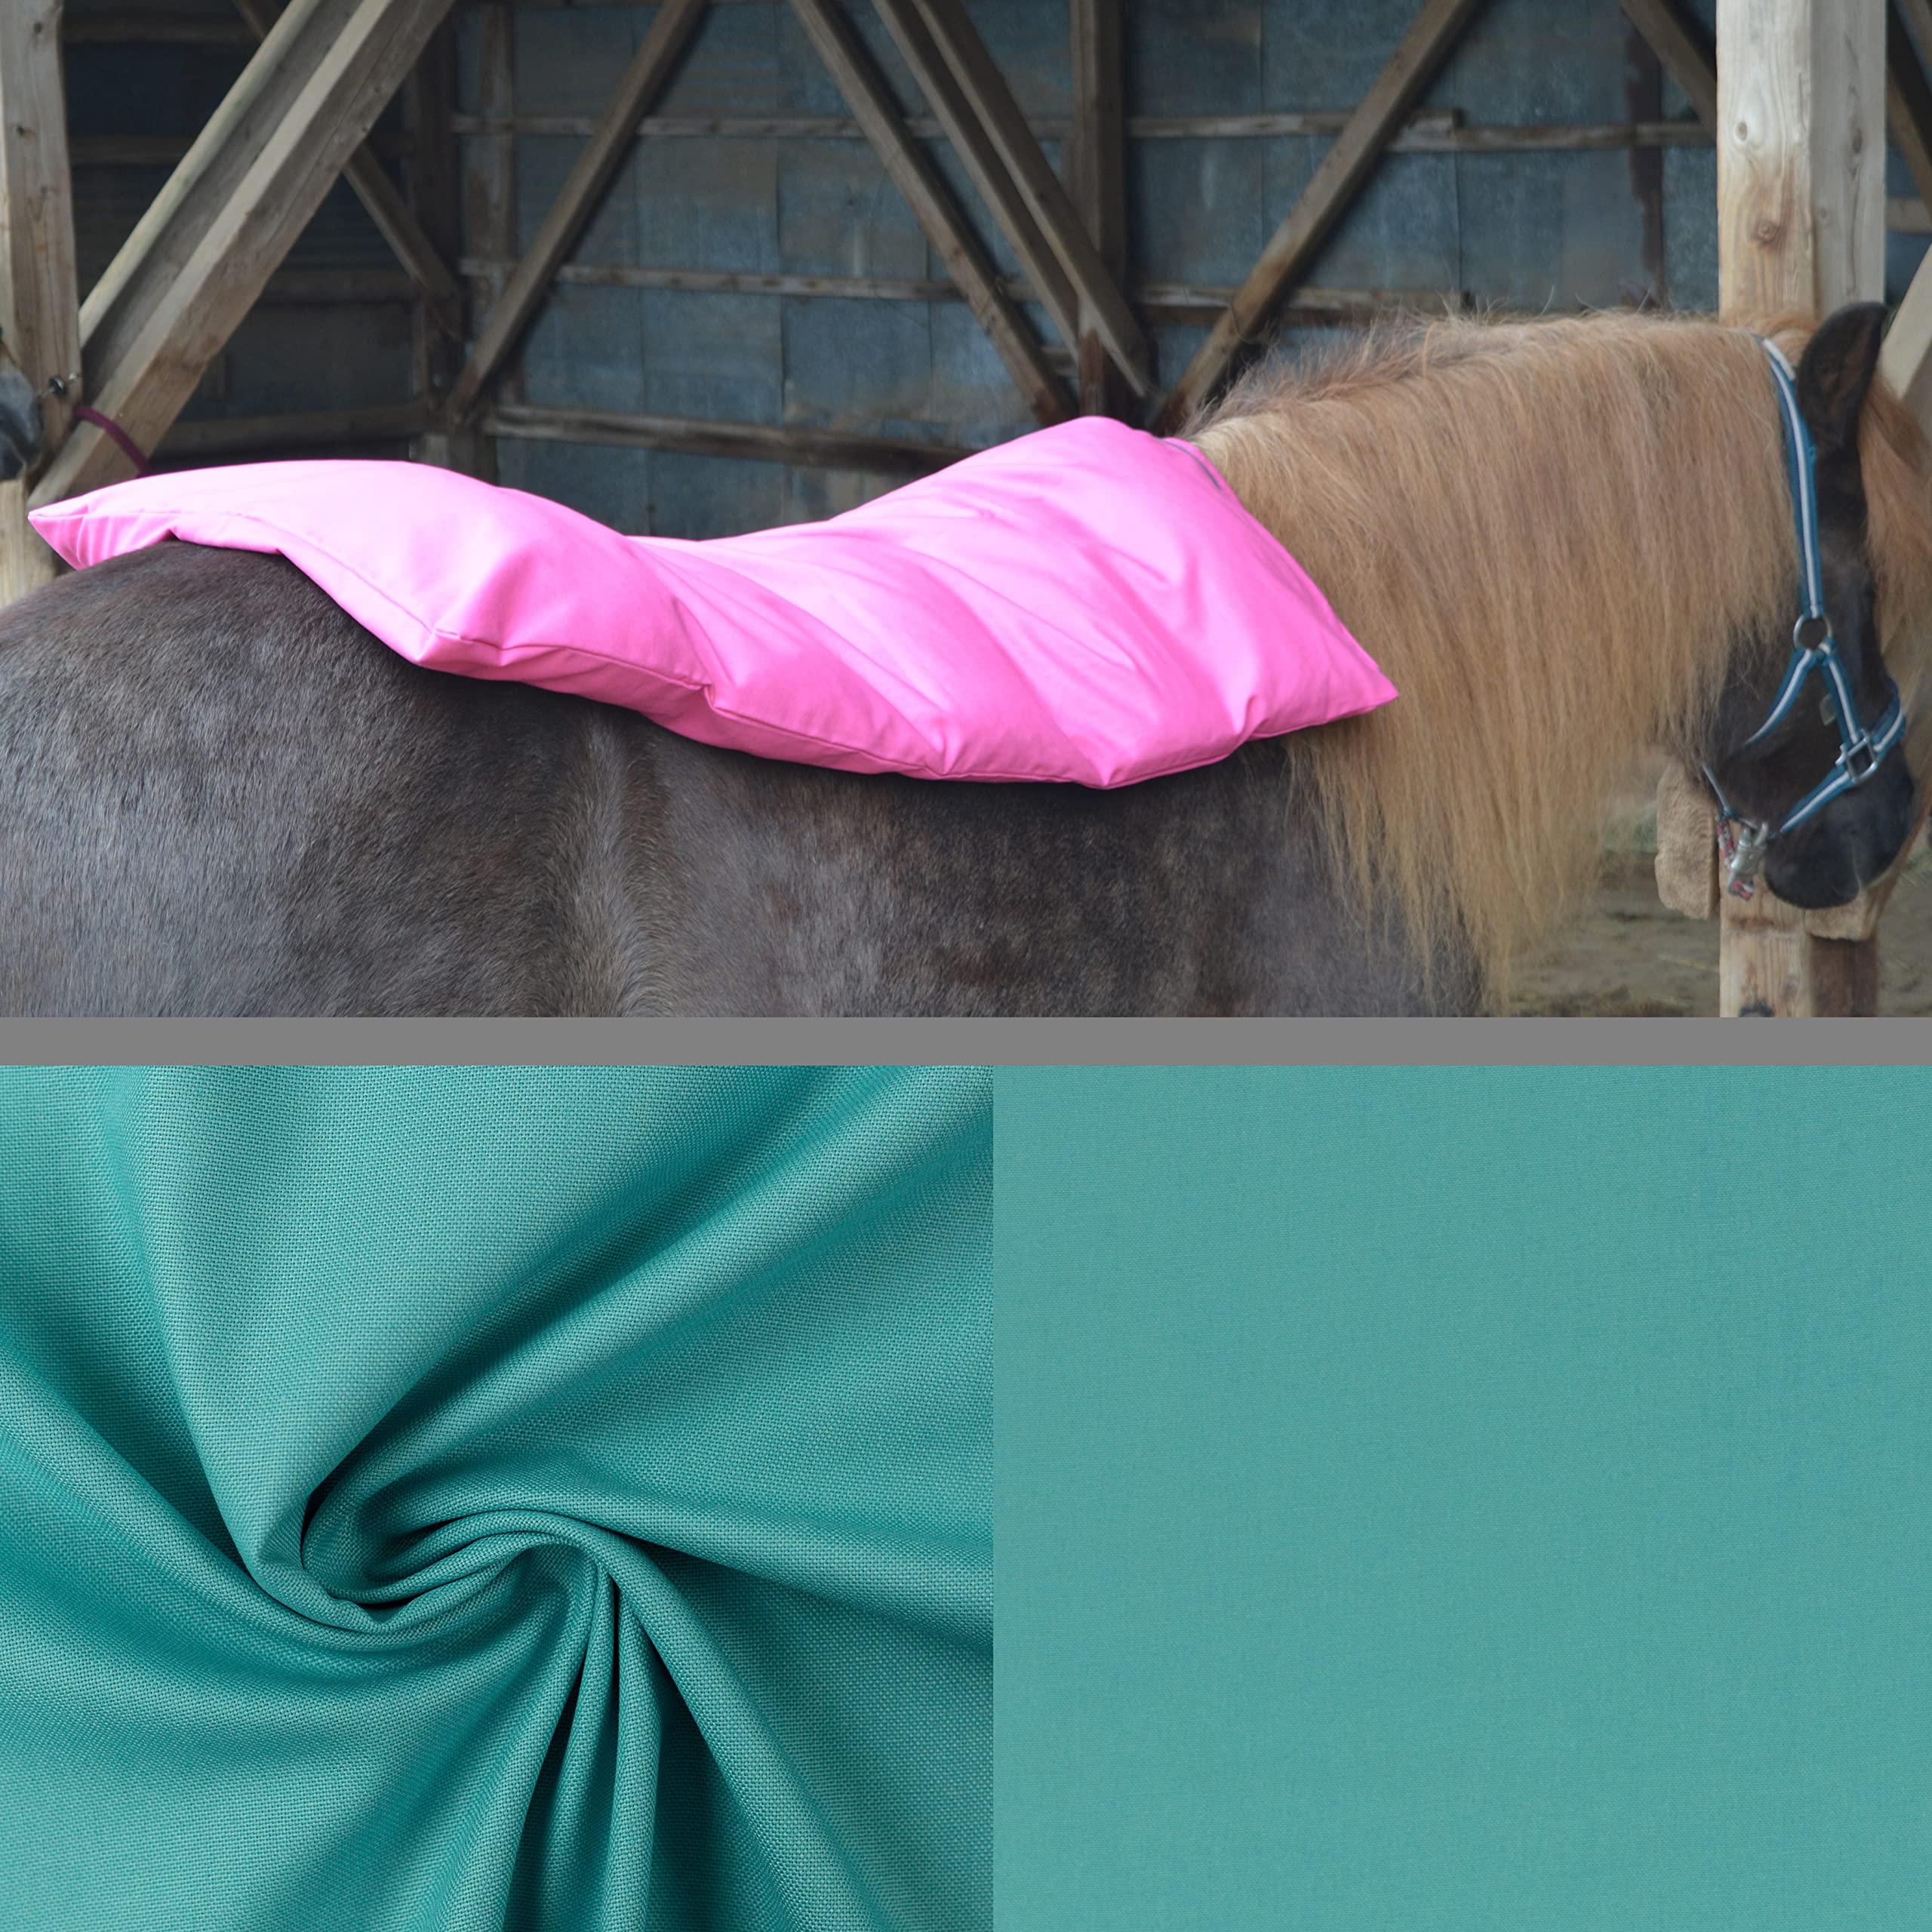 Teichwerk Dinkelspelzkissen Wärmekissen für Pferde Ponys Esel 1 farbig Mint Füllung Premium Plus 110x68